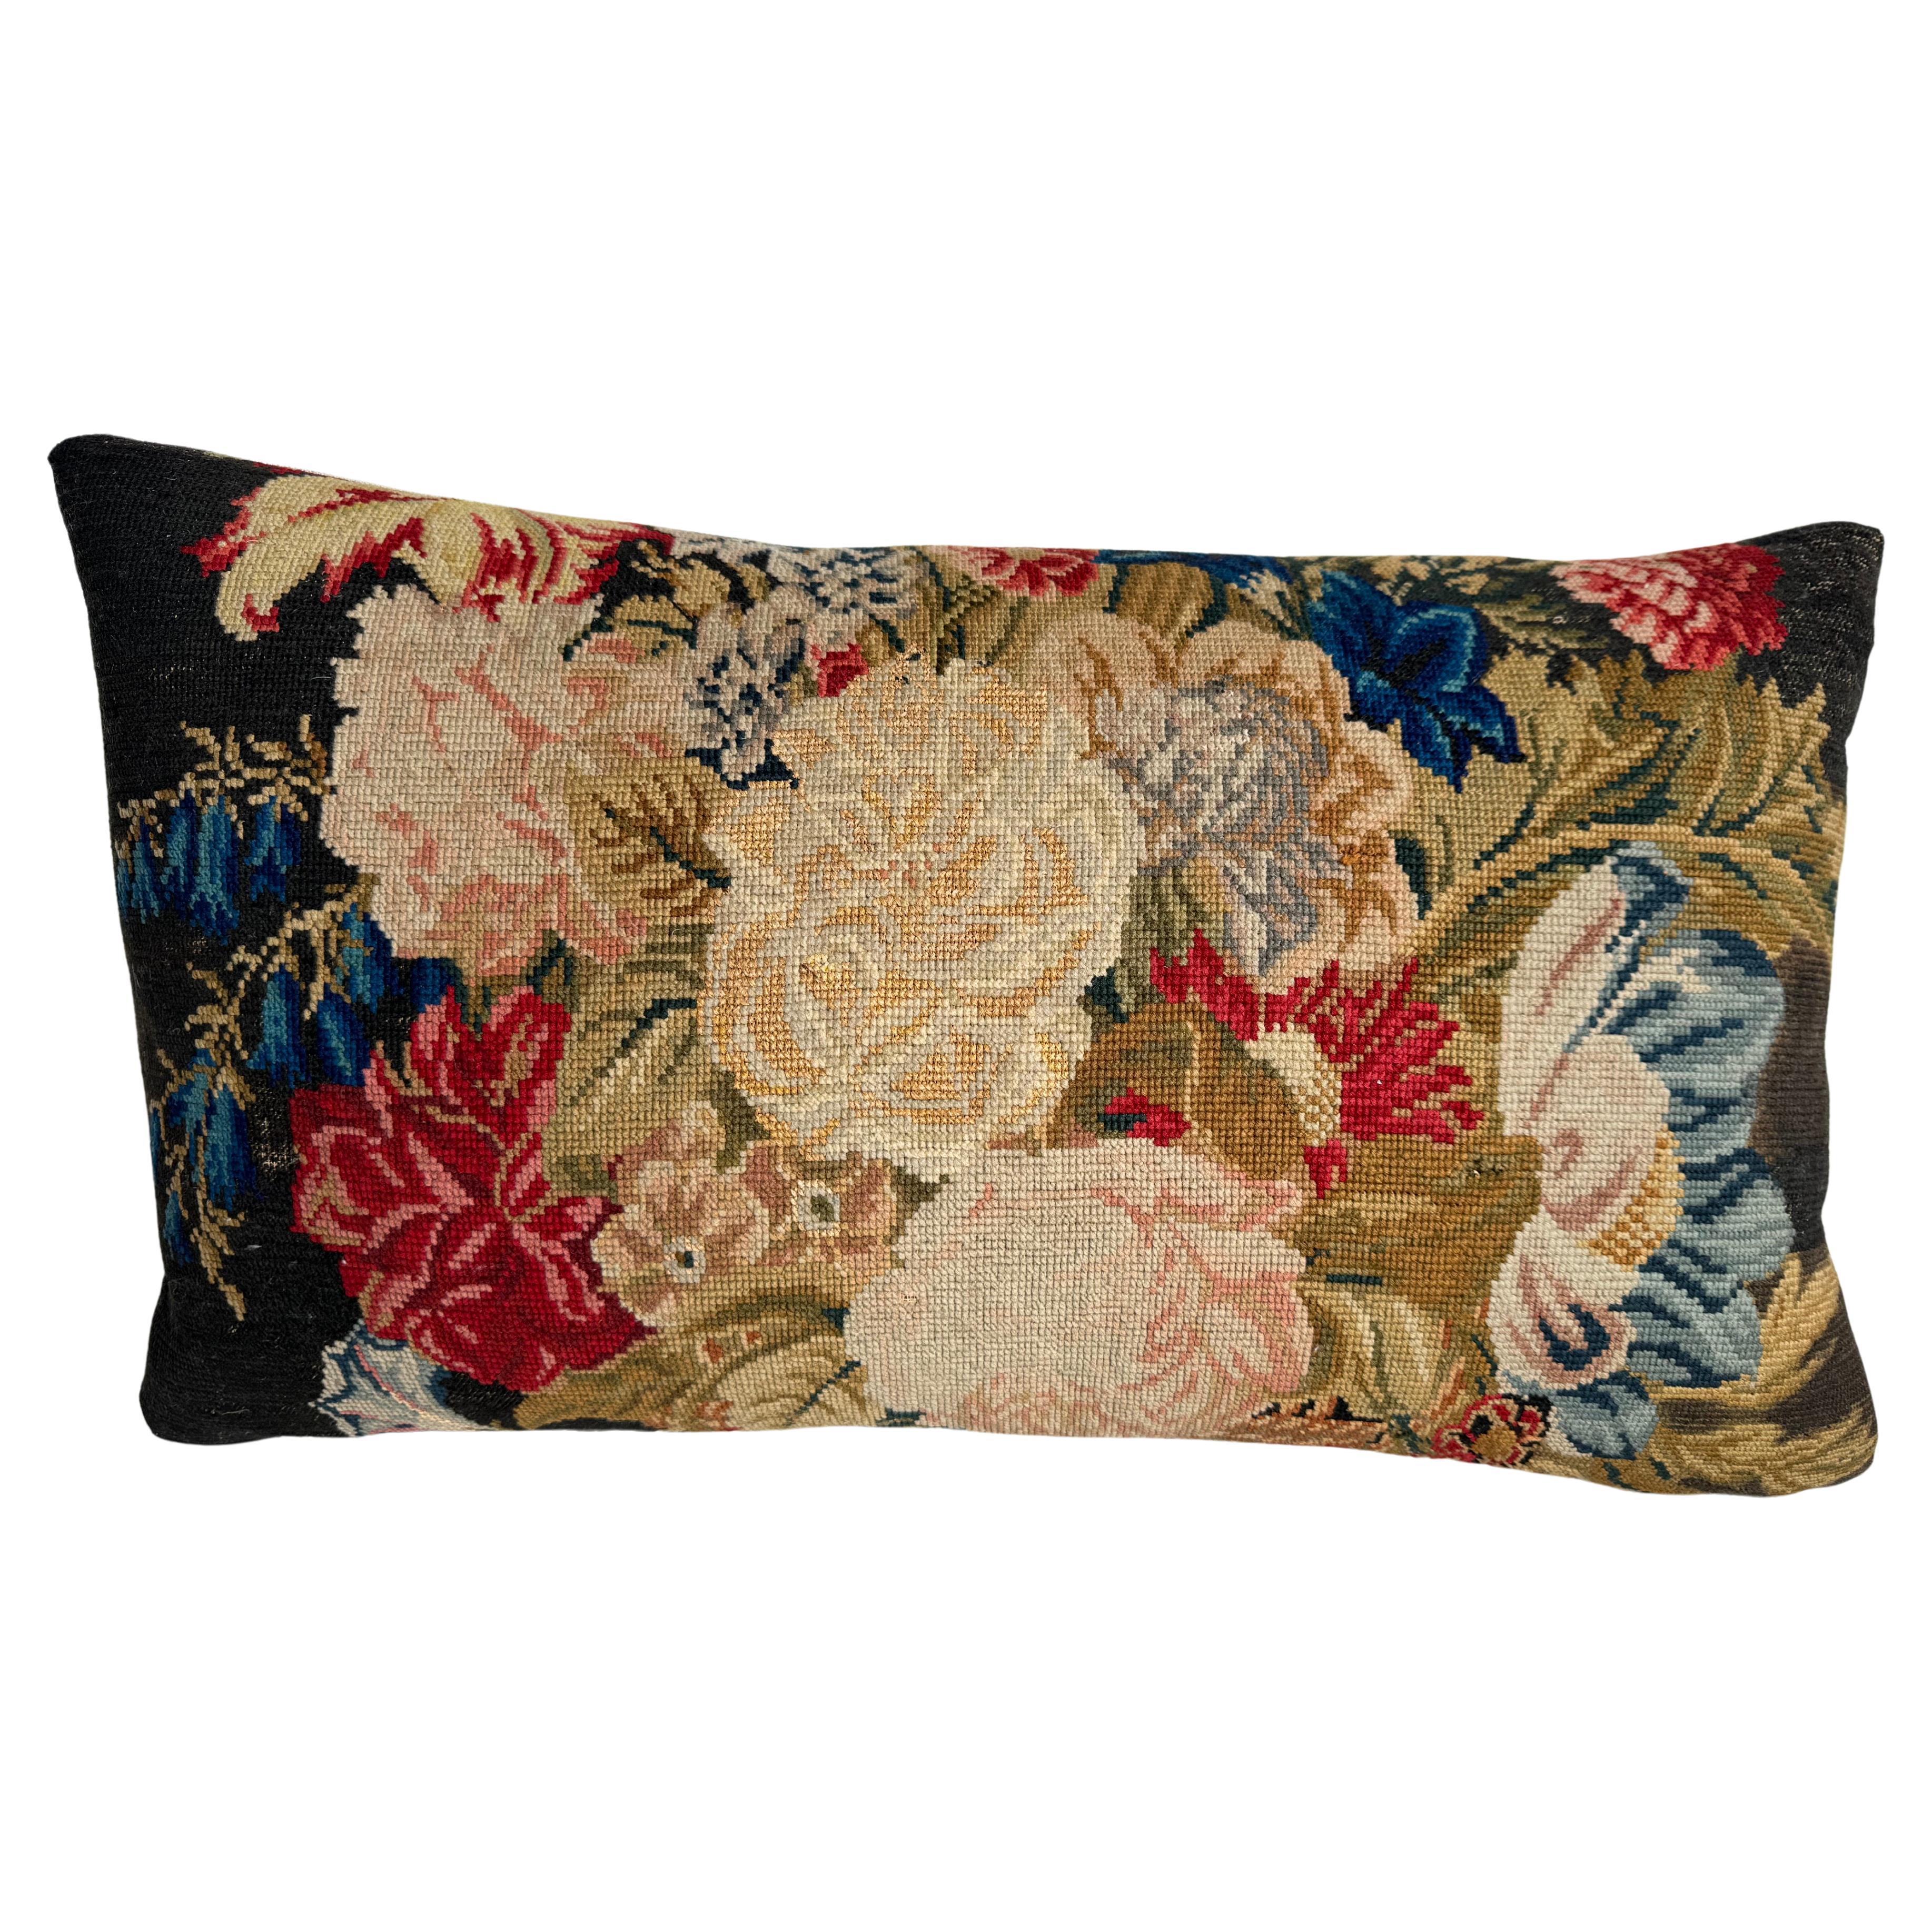 English Needlework Pillow 1850 - 21" x 12"